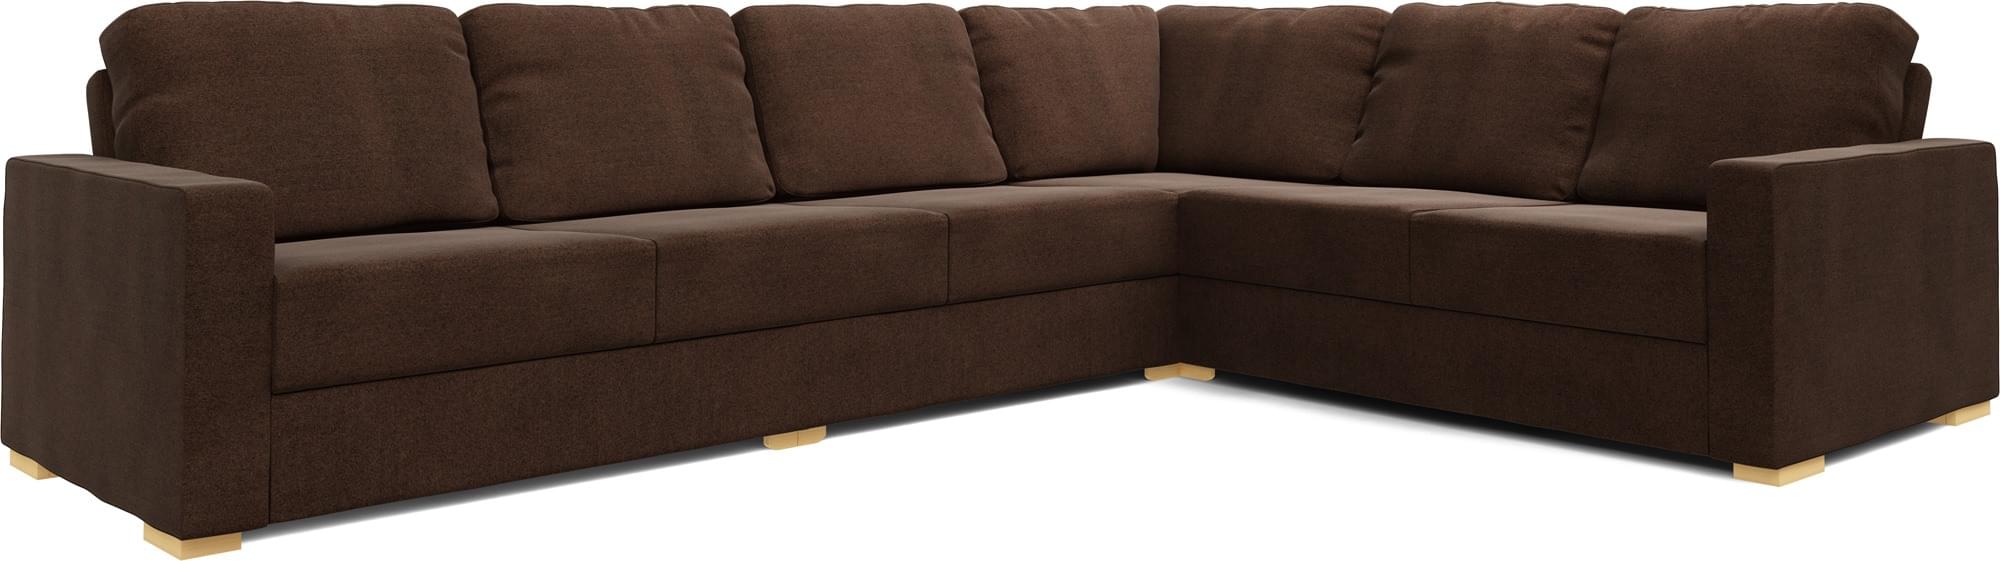 Alda 4X3 Corner Sofa